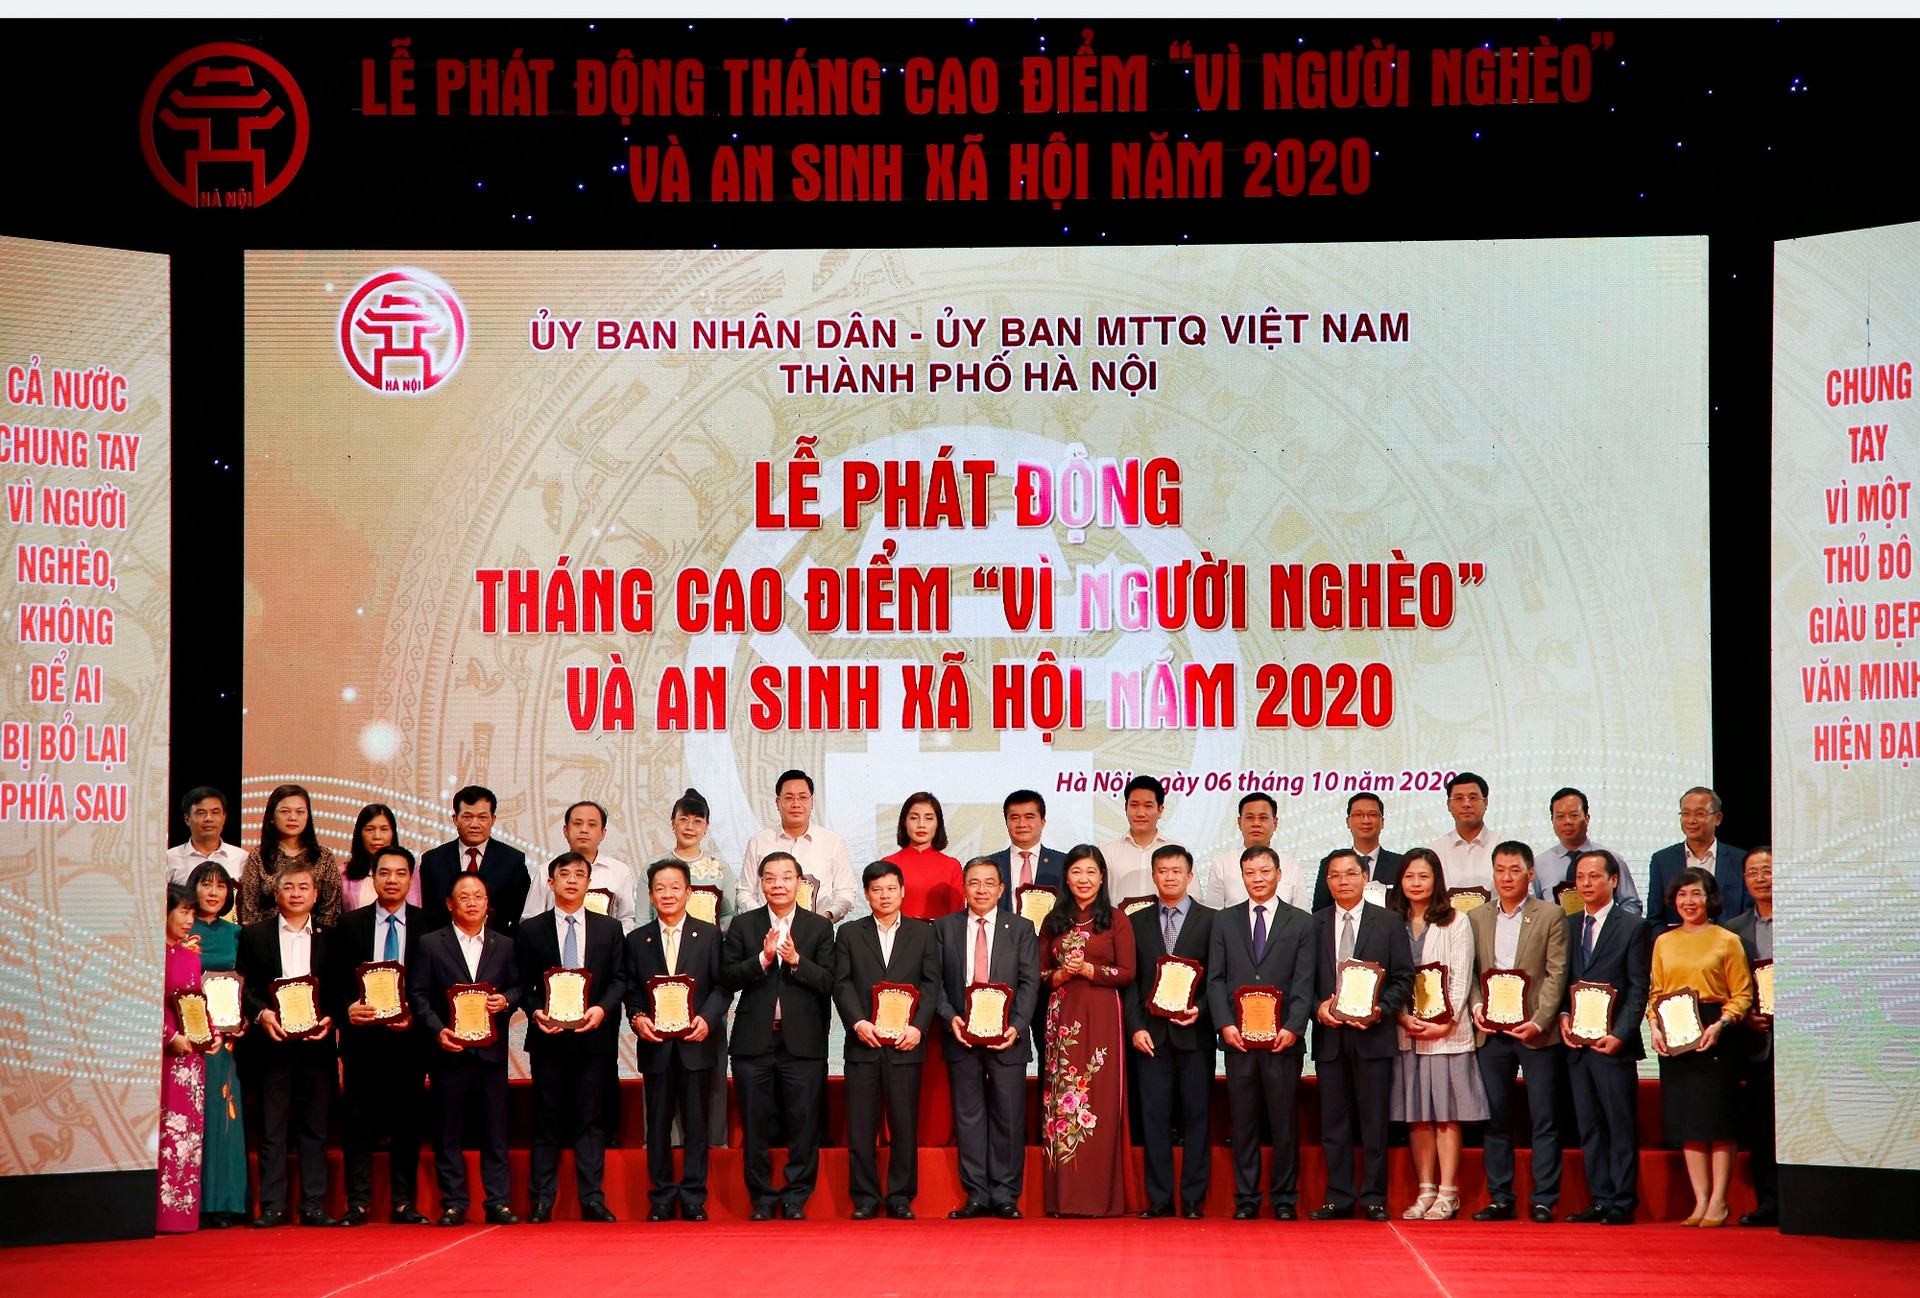 Tập đoàn BRG và Công ty Liên doanh Thành phố thông minh Bắc Hà Nội góp 1 tỷ đồng vì người nghèo